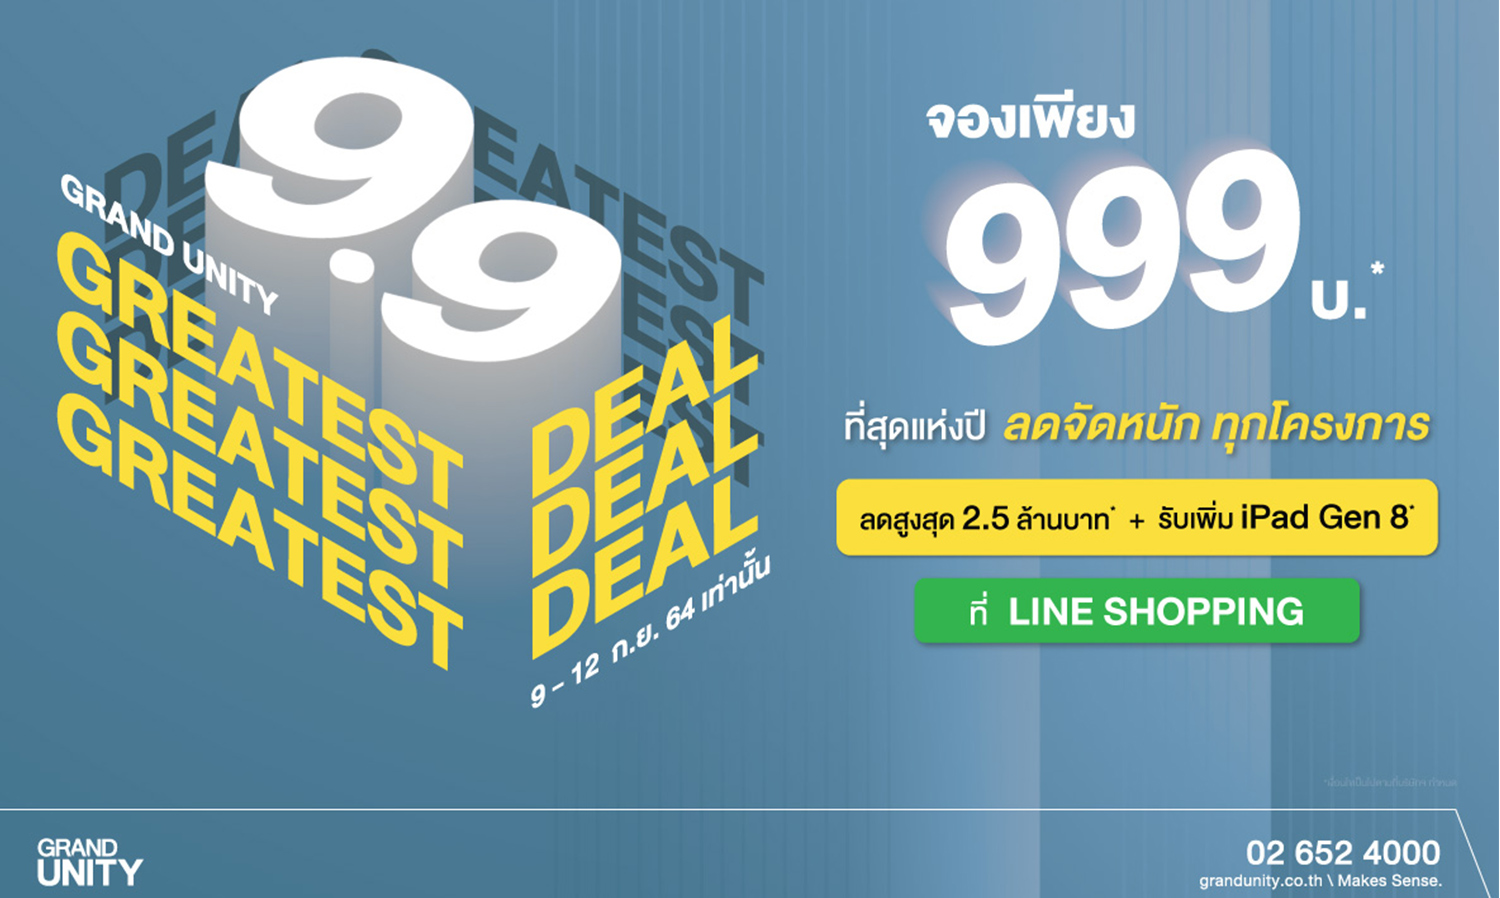 แกรนด์-ยูนิตี้-ส่งโปรฯ-แห่งปี-‘9-9-the-greatest-deal’-จองคอนโดพร้อมอยู่-999-บาท-ผ่าน-line-shopping-ลดสูงสุด-2-5-ล้านบาท